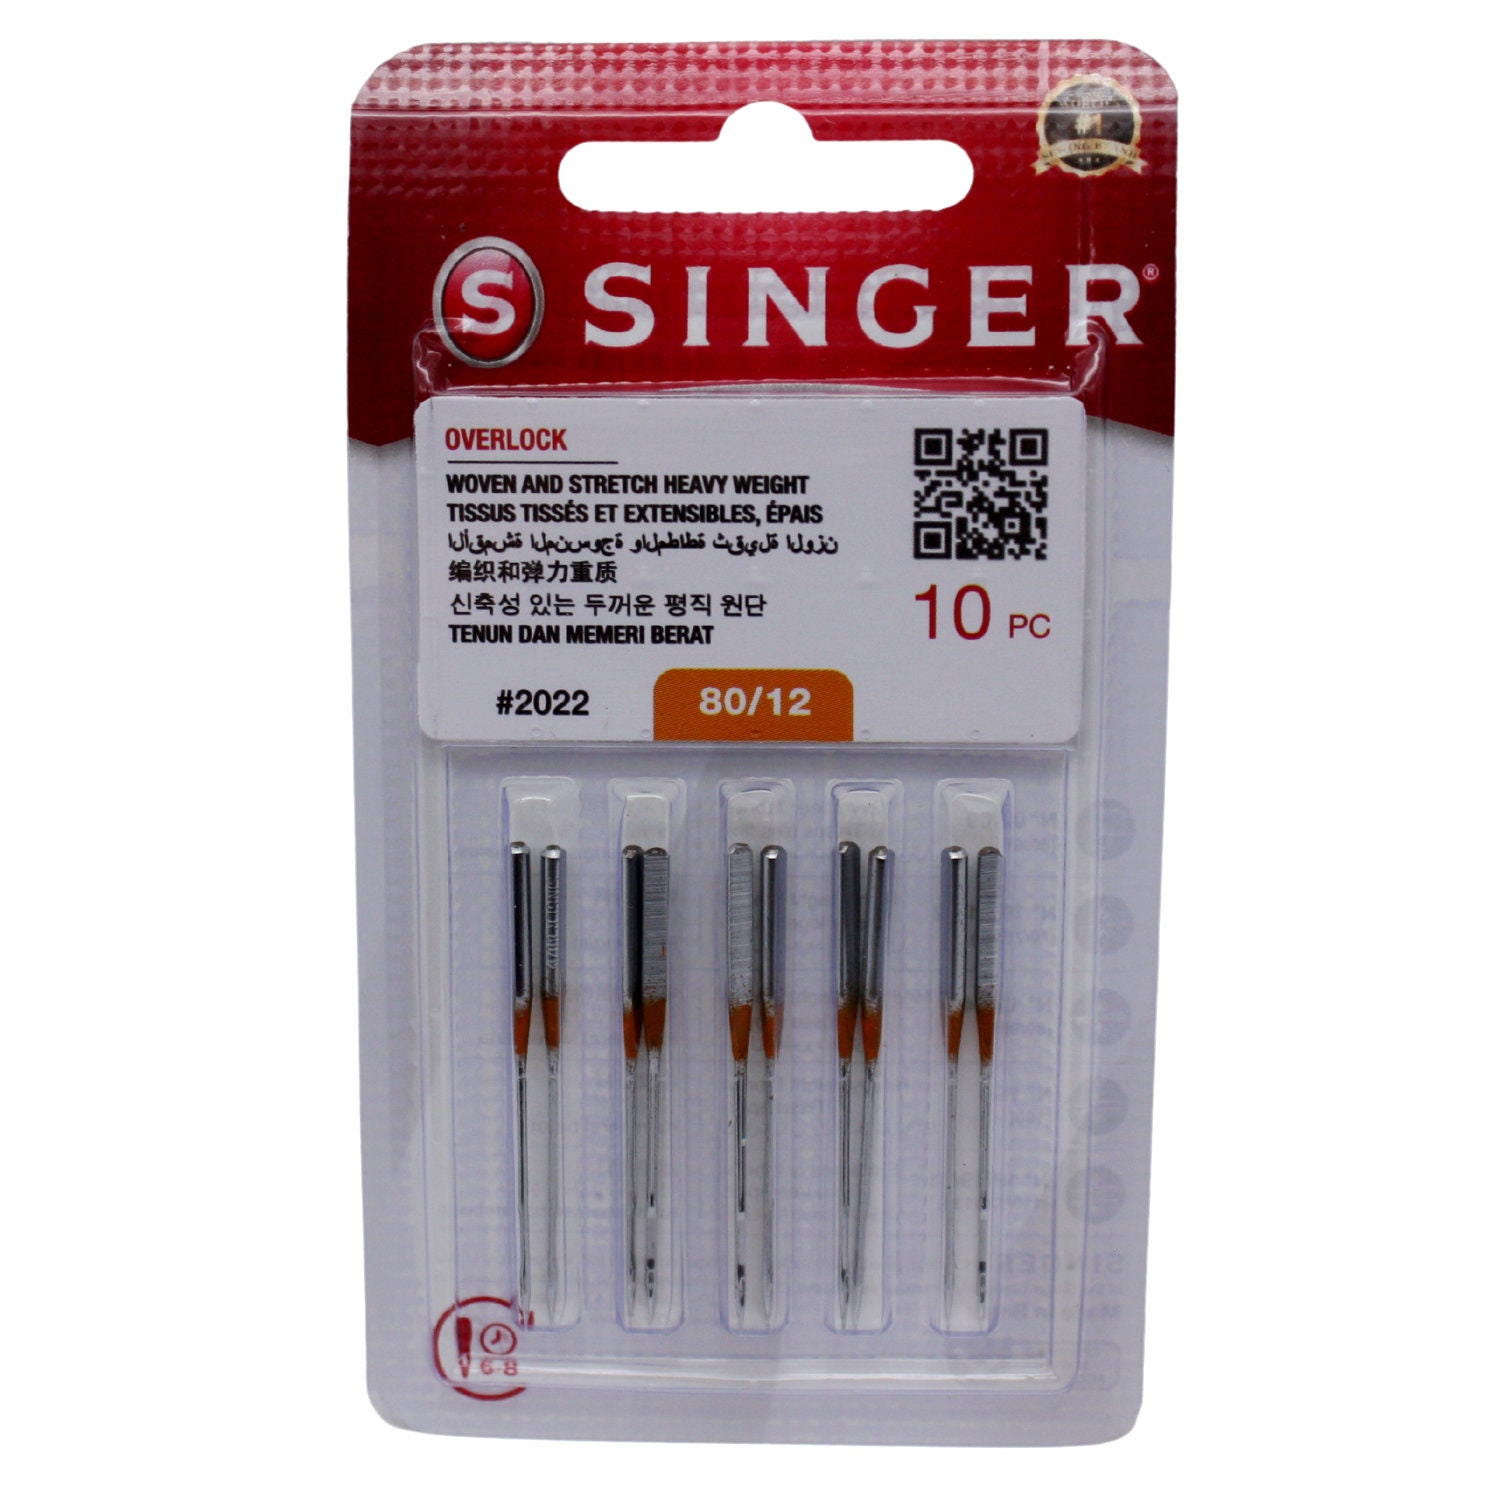 Singer Sewing Machine Needles 